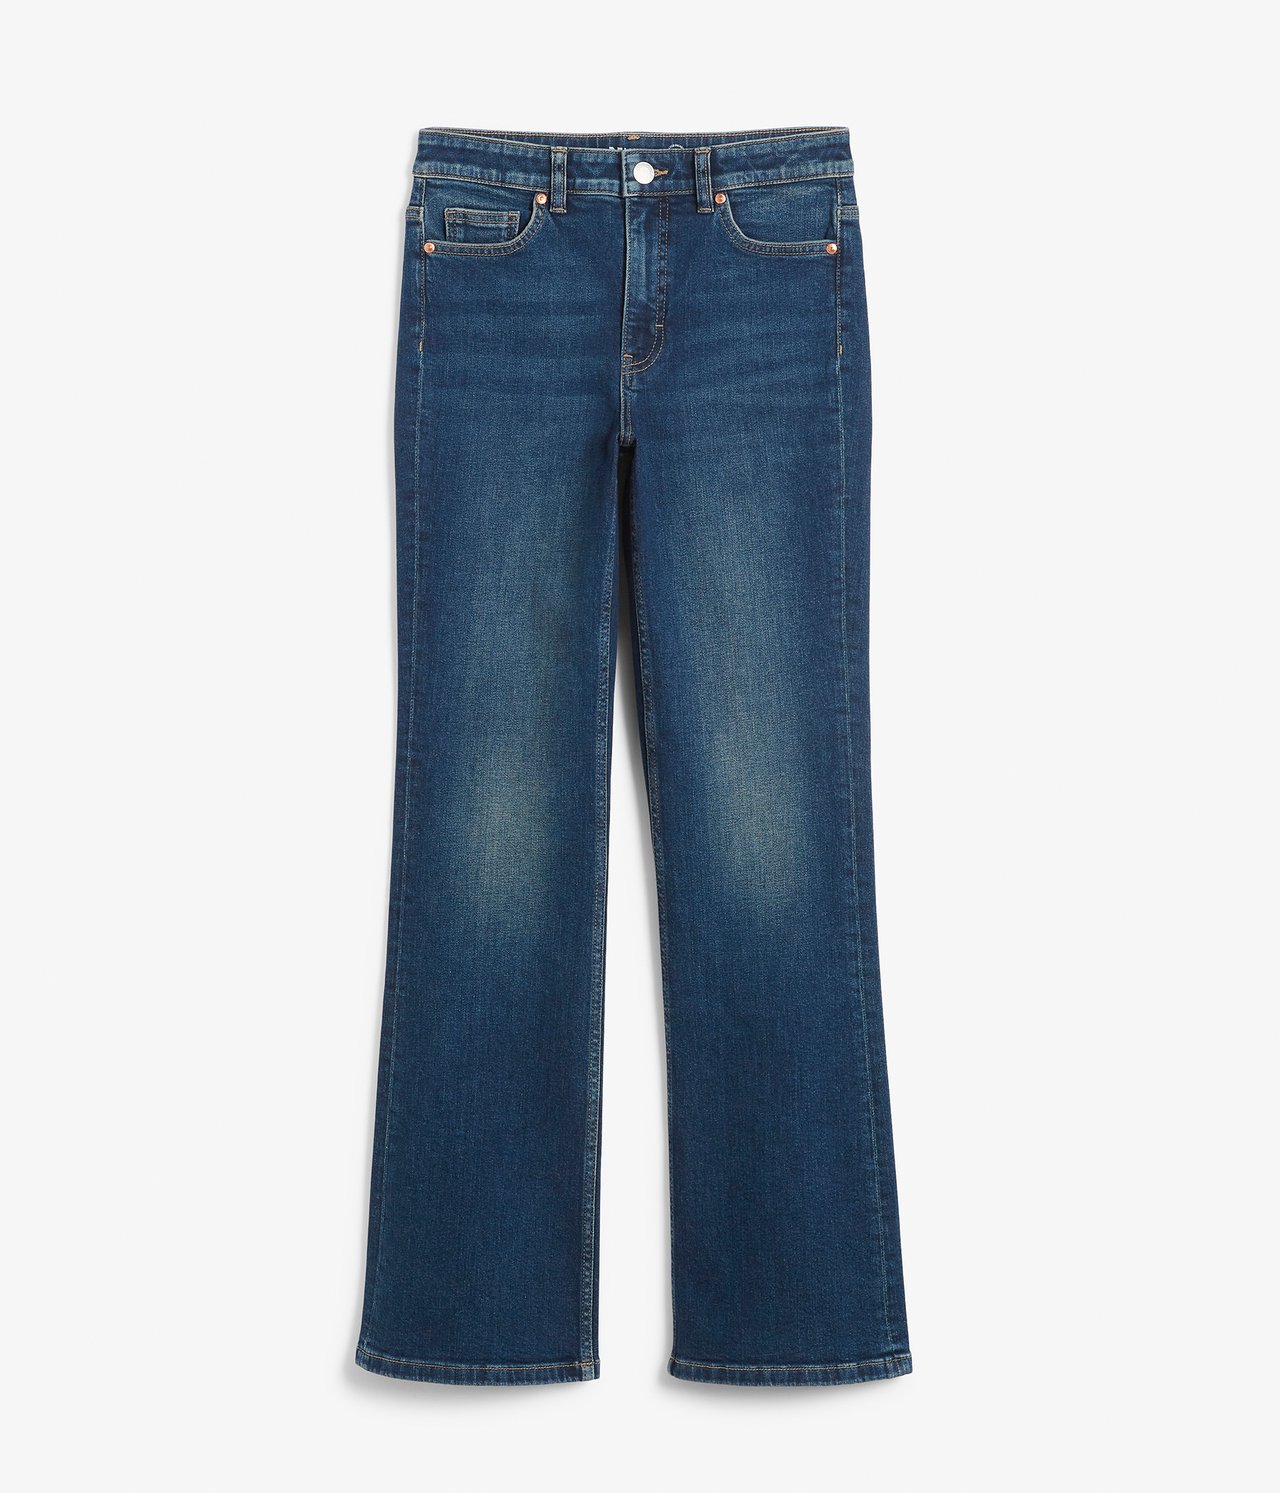 Flare jeans regular waist - Mörk denim - 6